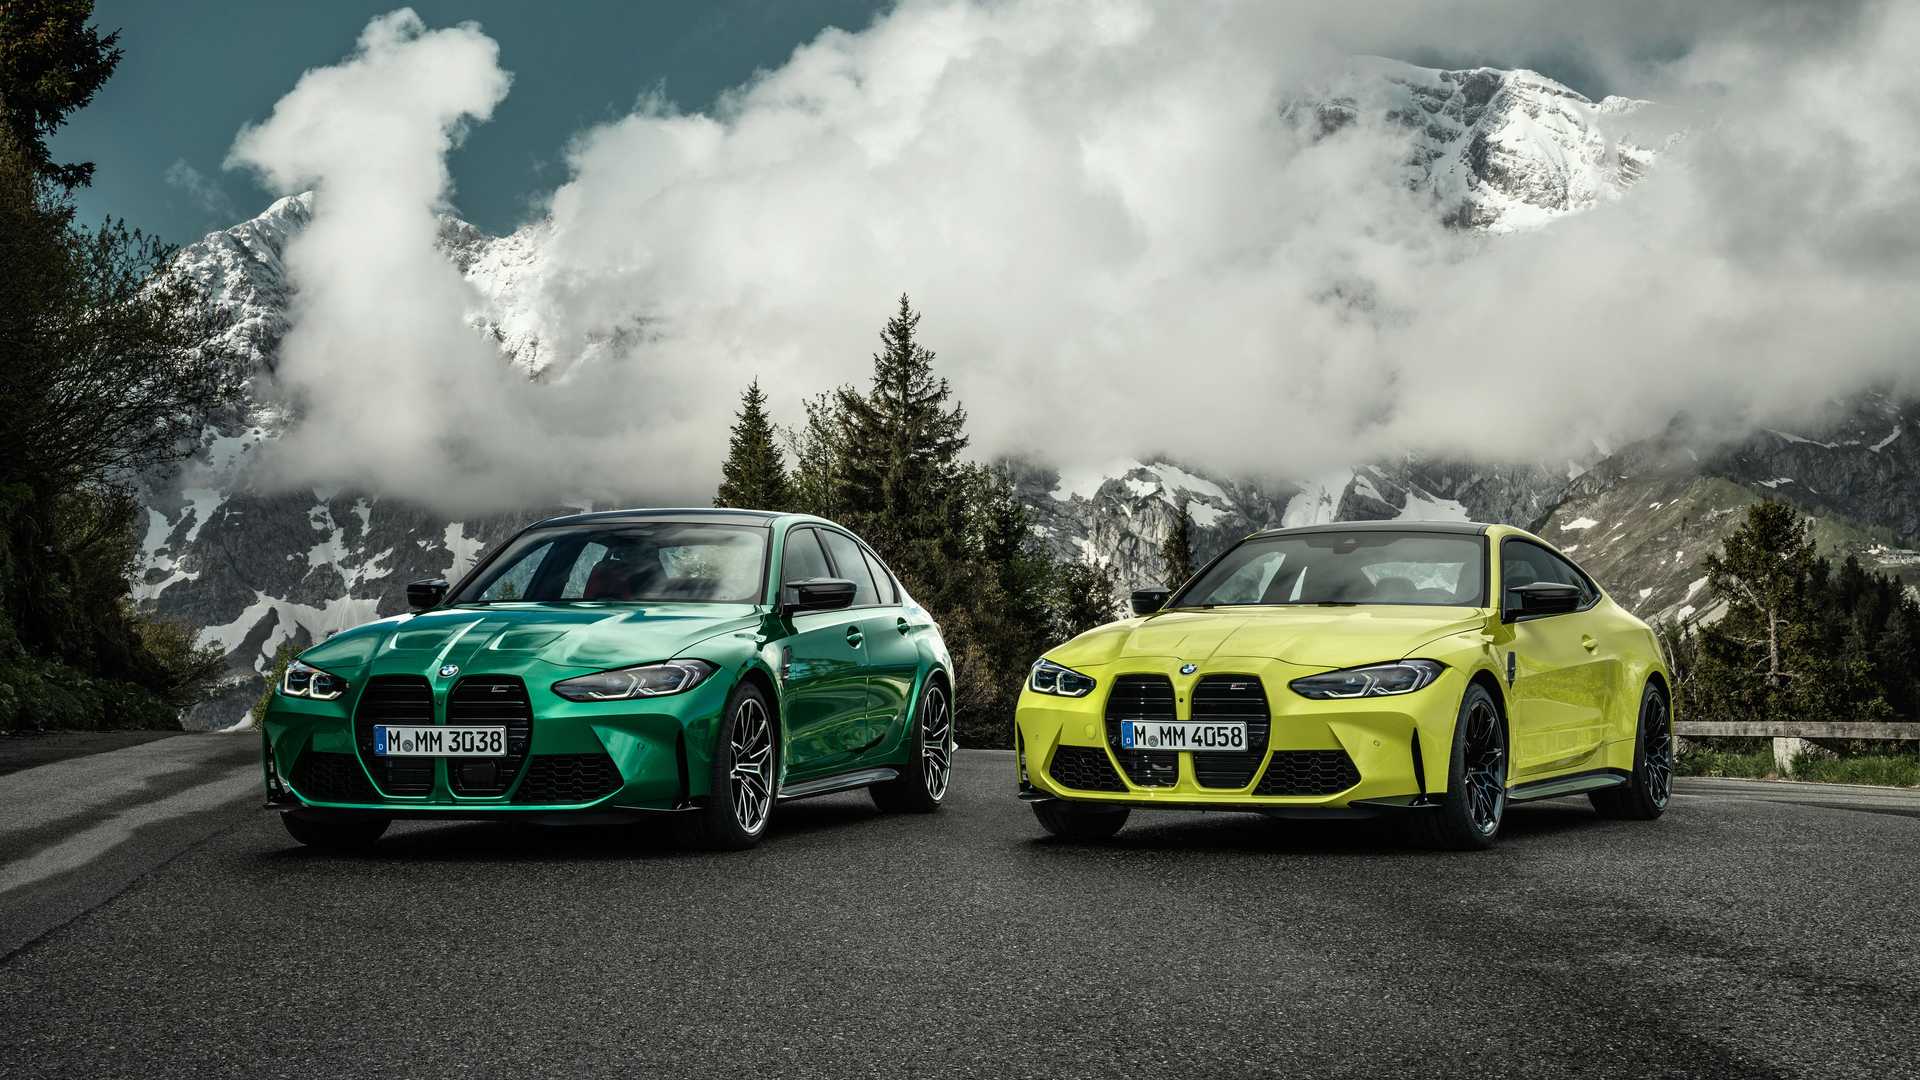 Súťaž o najkontroverznejší dizajn vyhráva duo BMW M3 a M4